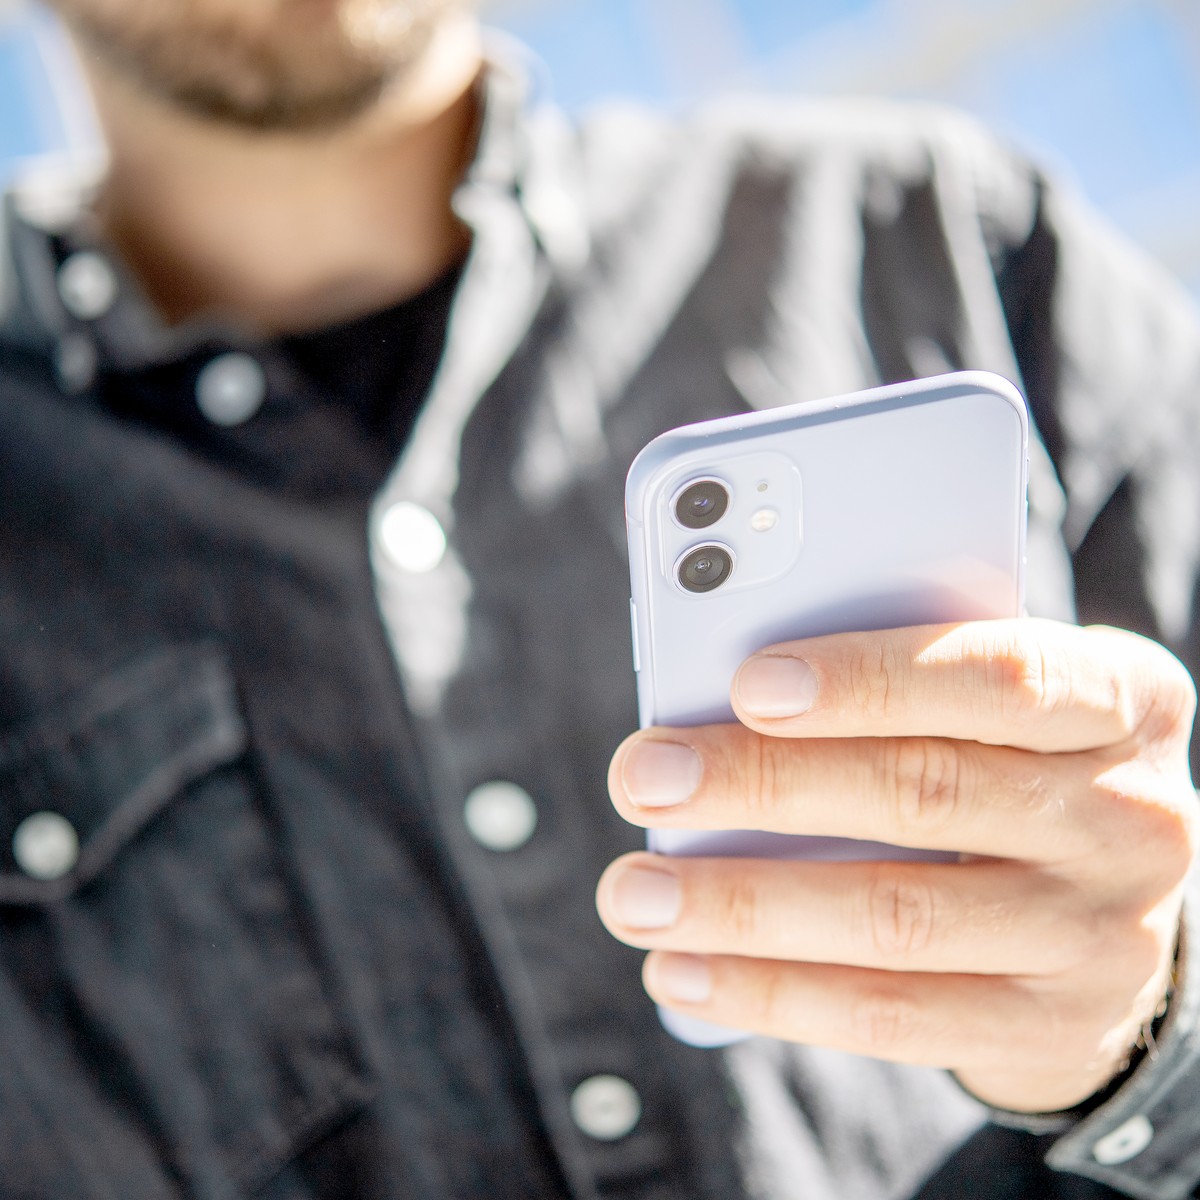 Mobilfunk: Wie riskant ist Handystrahlung? Ein Faktencheck